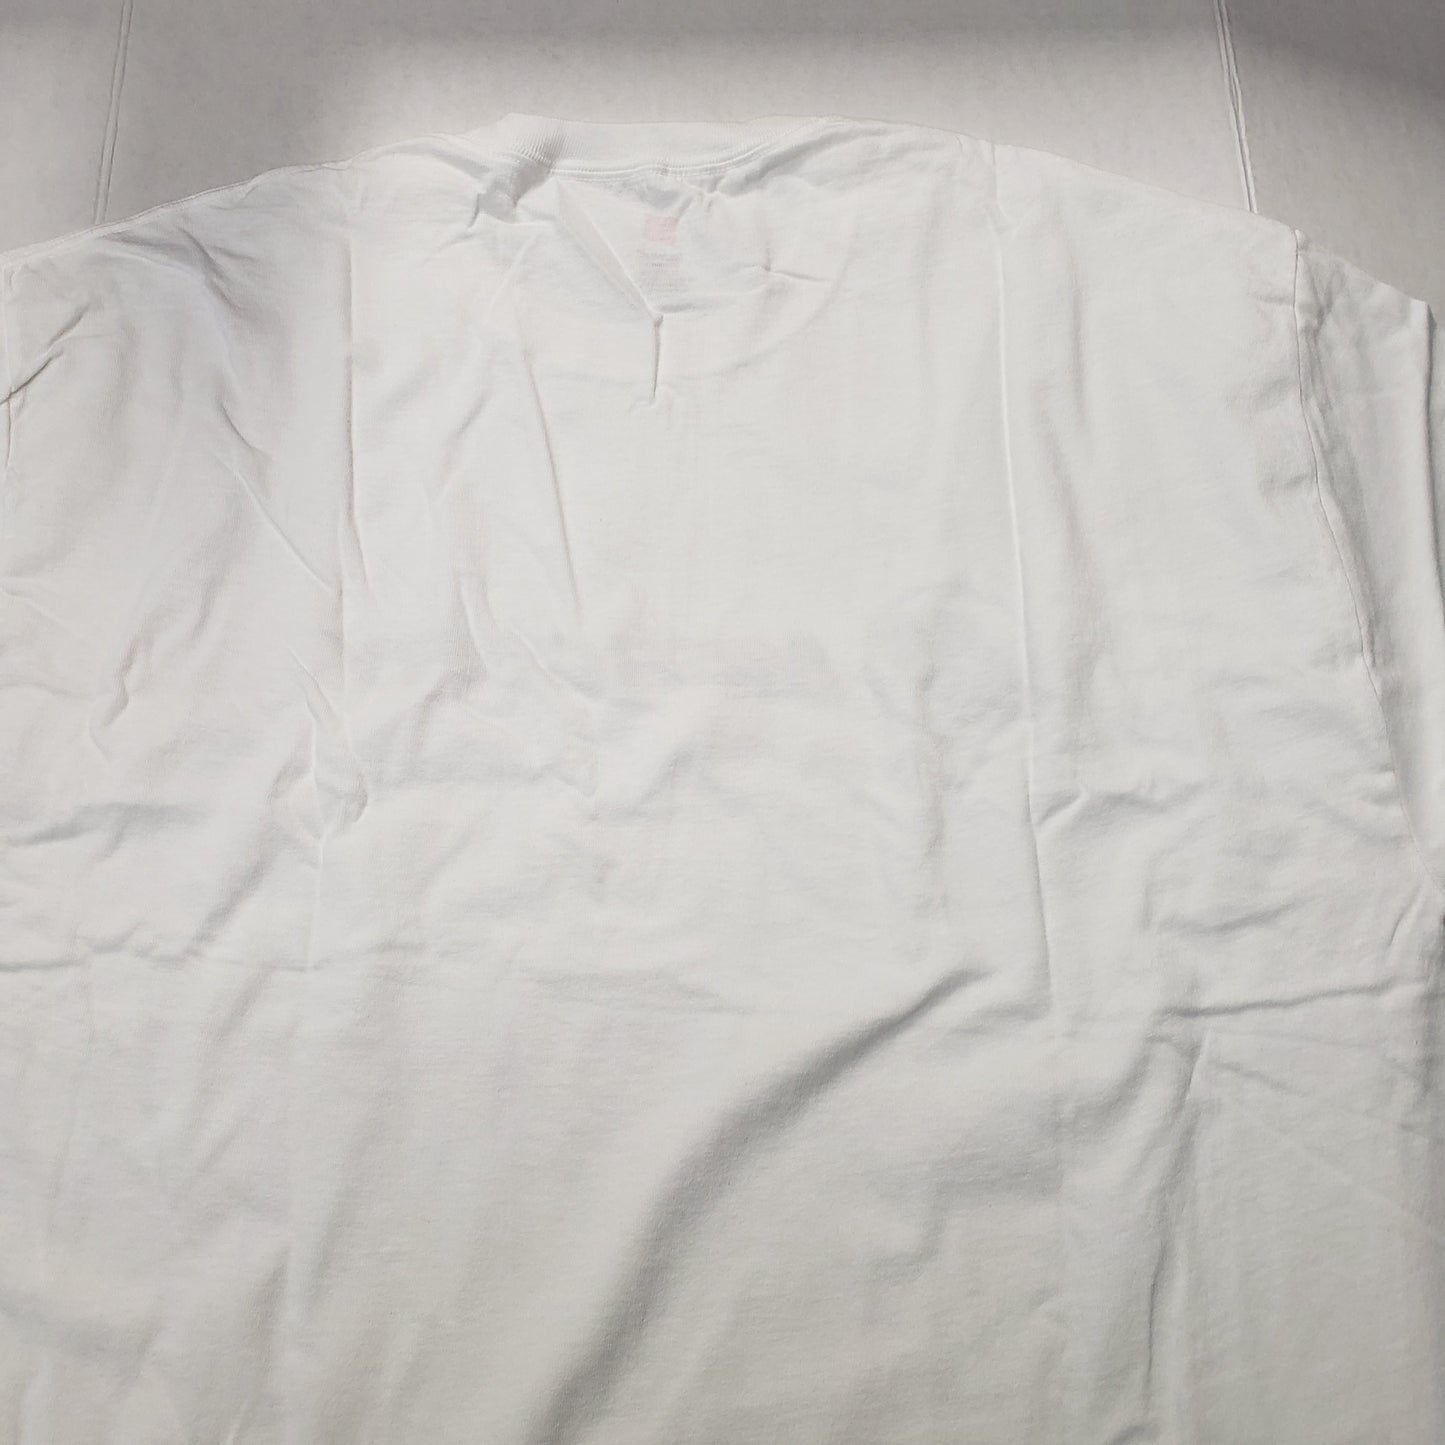 New Authentic Mercury Marine Short Sleeve Shirt White/ Black MERCURY Logo 2XL